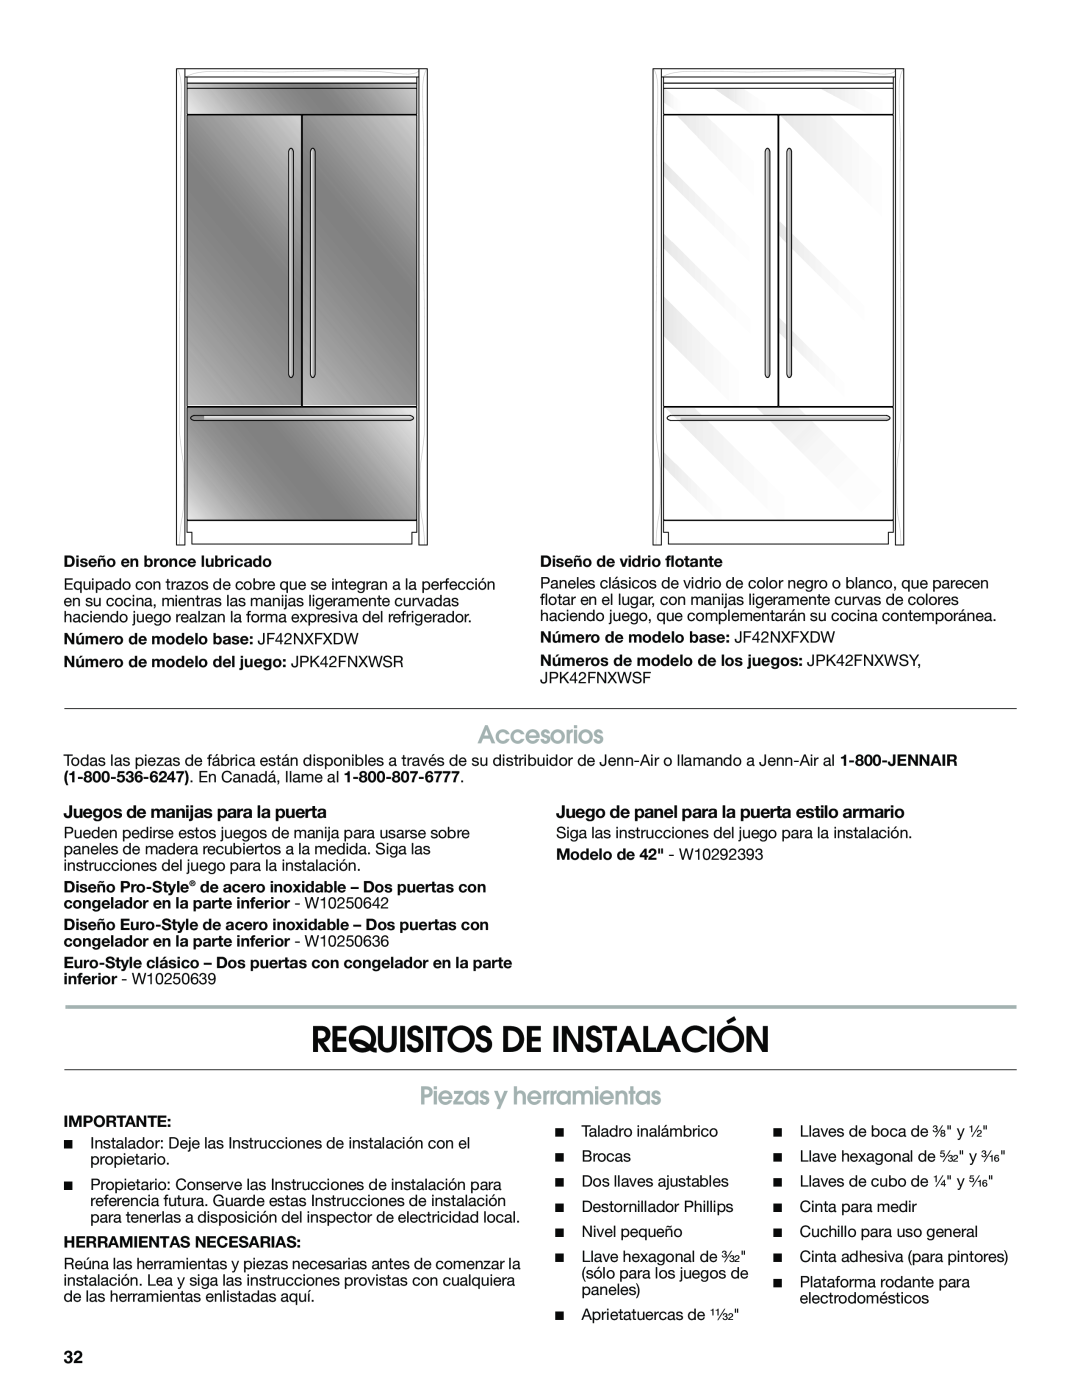 Jenn-Air W10379137A manual Requisitos De Instalación, Piezas y herramientas, Accesorios, Juegos de manijas para la puerta 